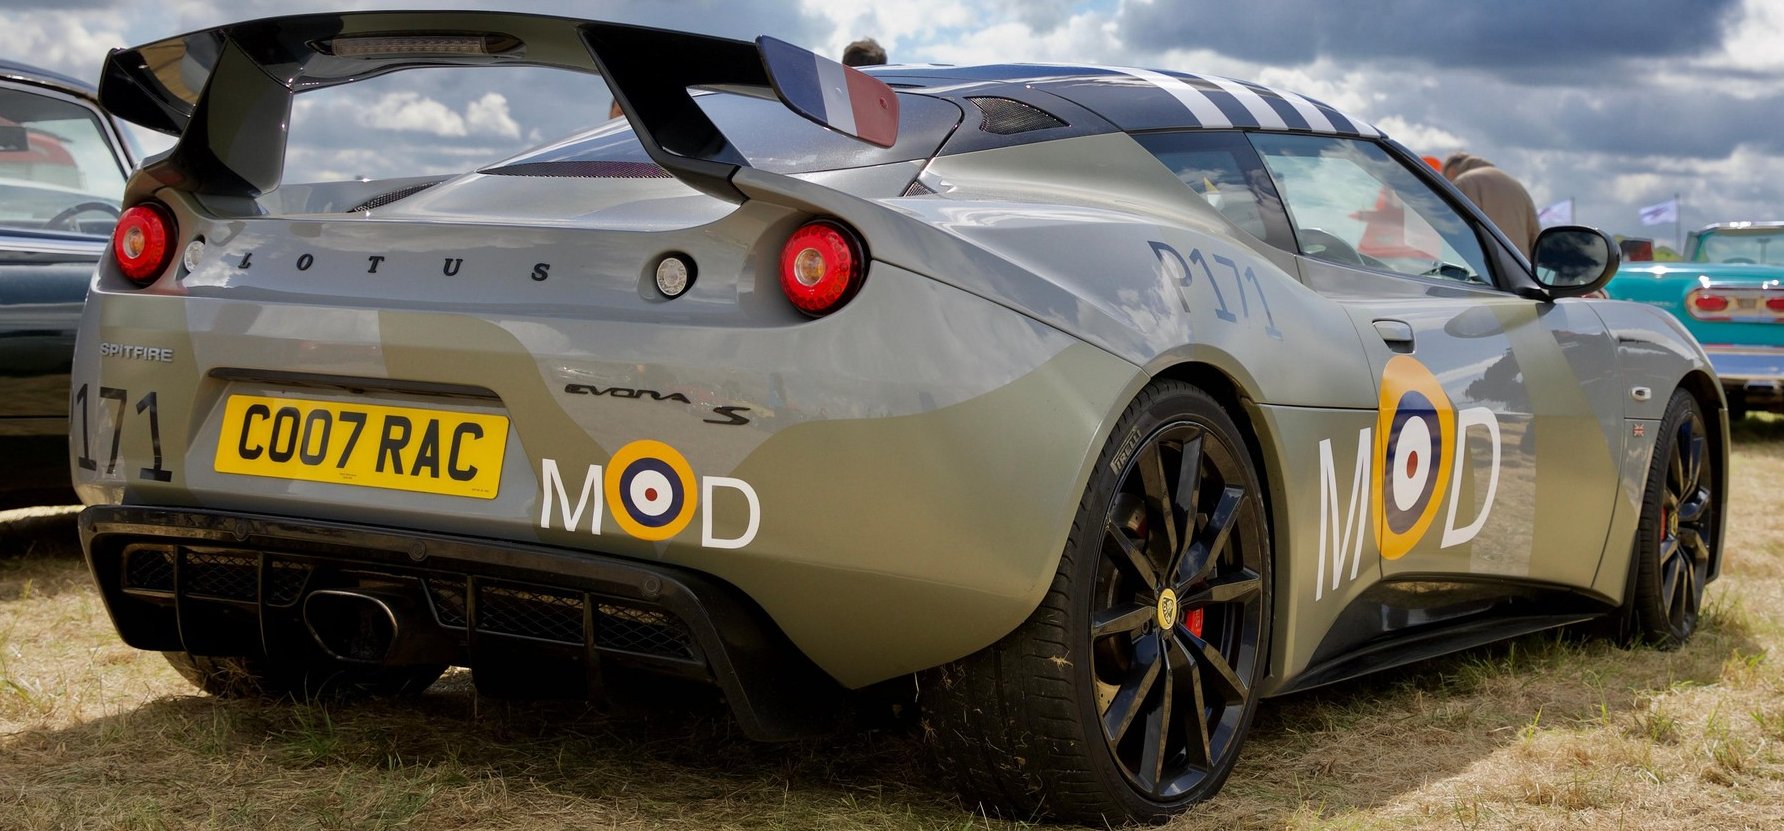 A Lotus új virágai: elektromos autókkal robbantana a patinás márka